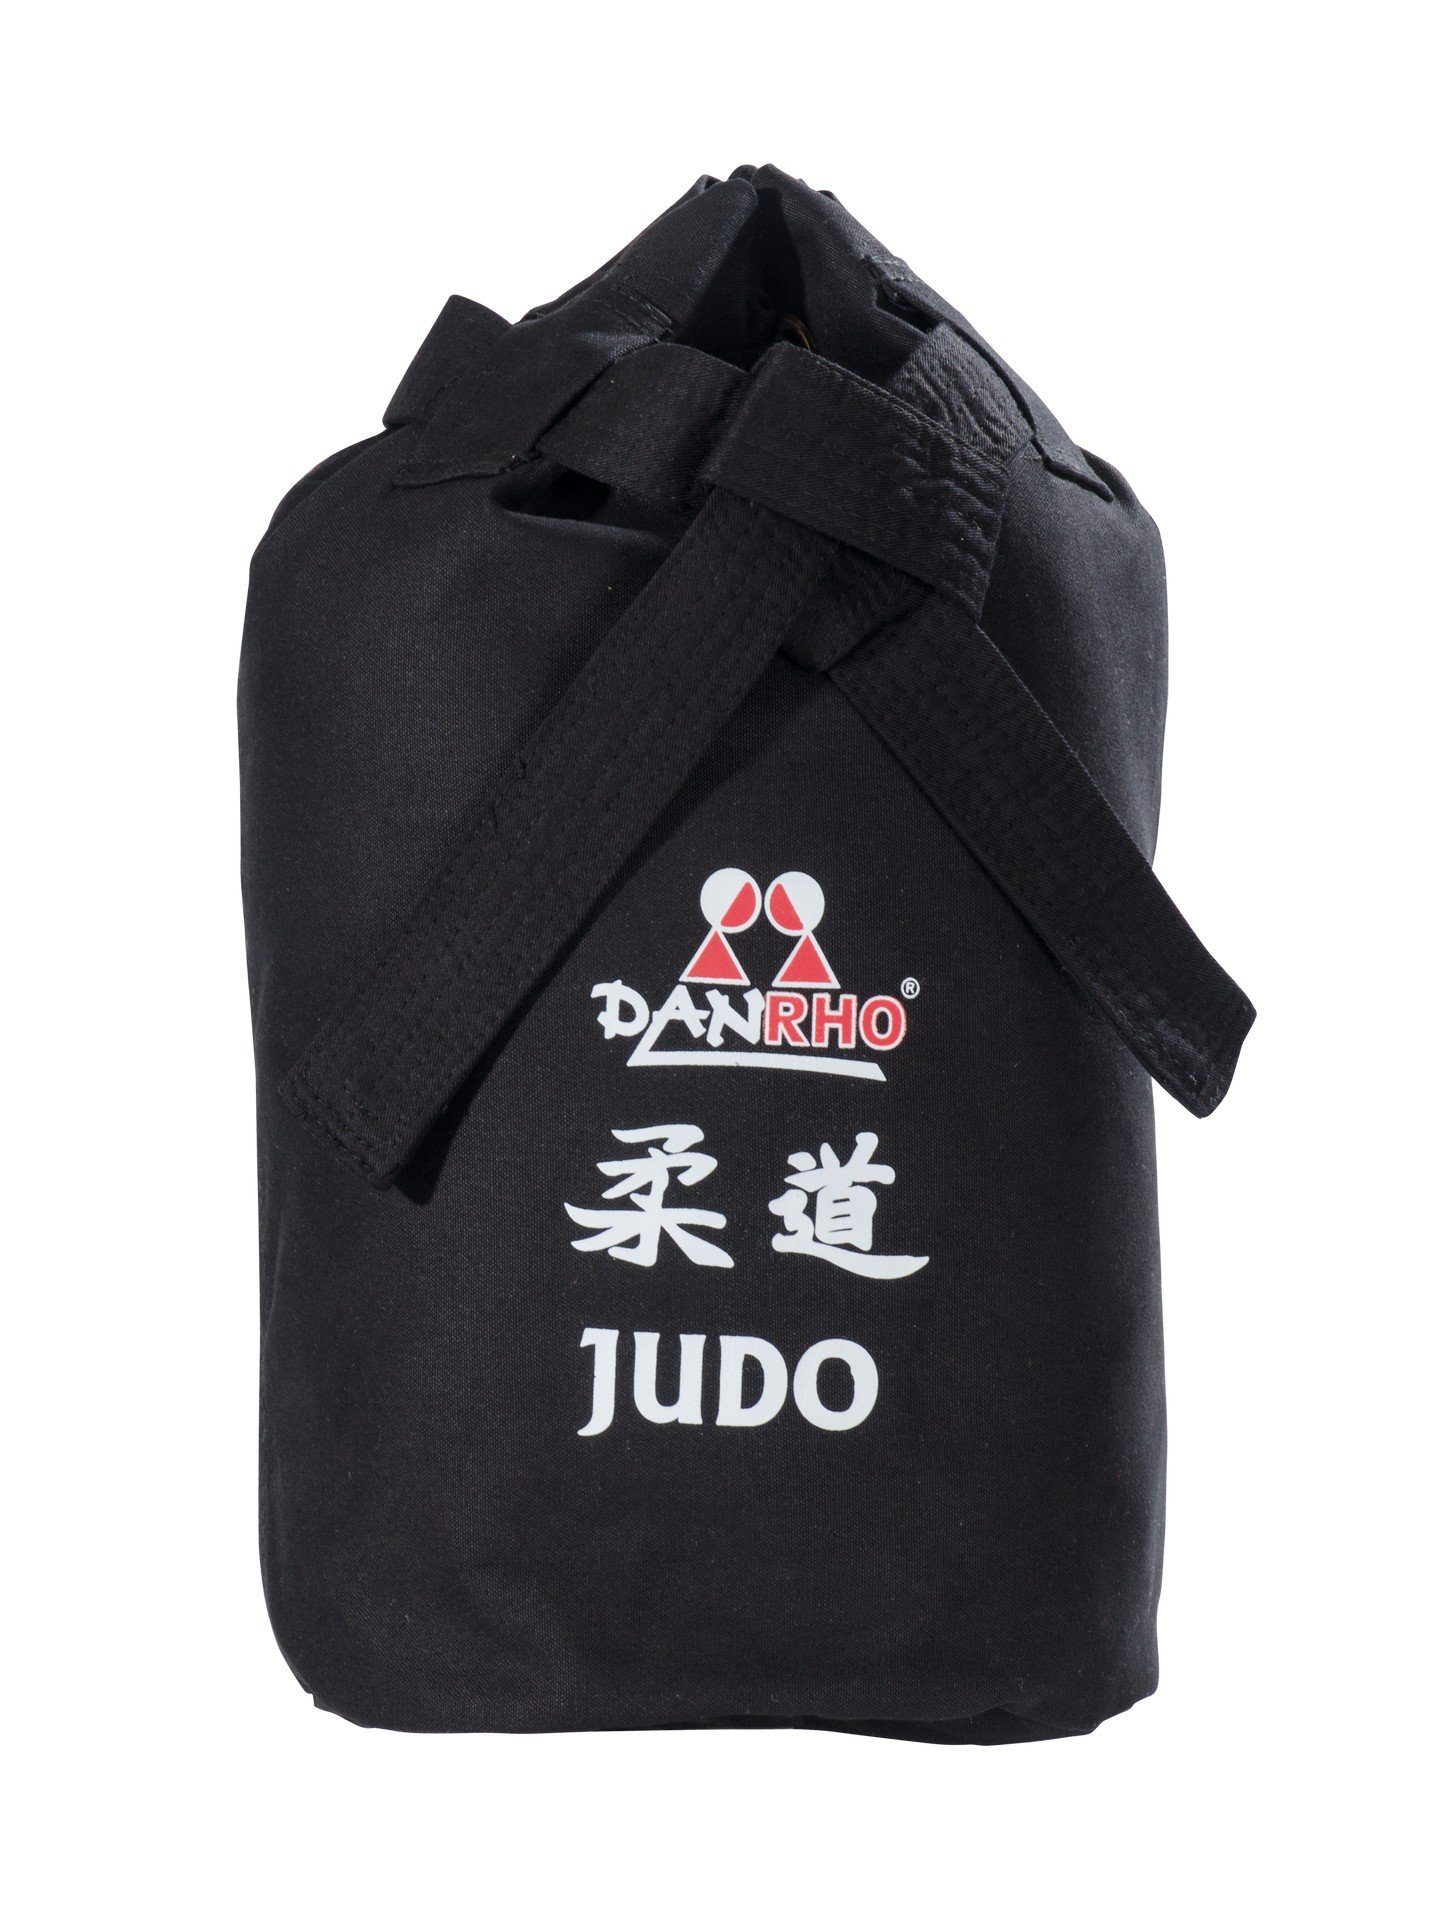 oder Optik weiss, Schnellverschluß), Judo Kinder Danrho Kordelzug Turnbeutel Sporttasche Beutel Budogürtel schwarz (Baumwolle, Rucksack Seesack